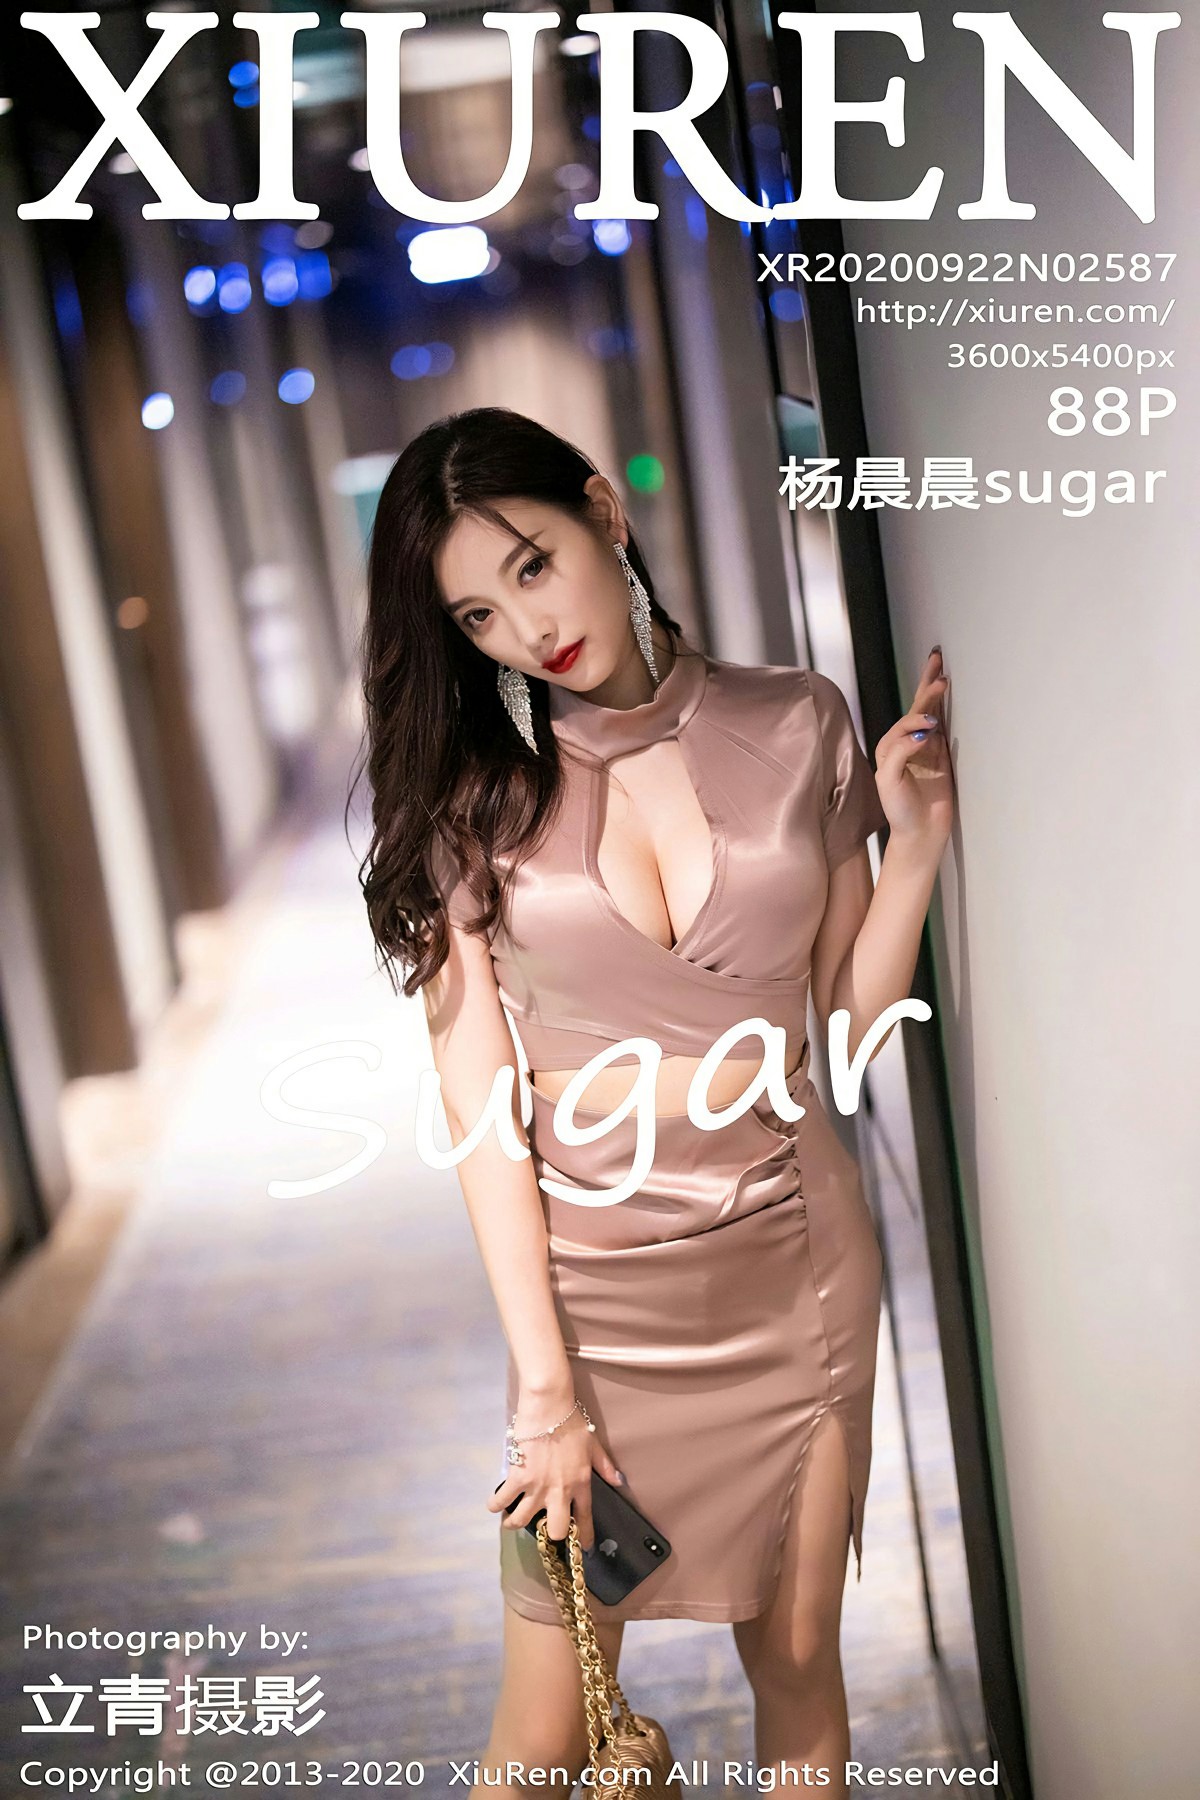 [XiuRen秀人网] 2020.09.22 No.2587 杨晨晨sugar [88+1P]